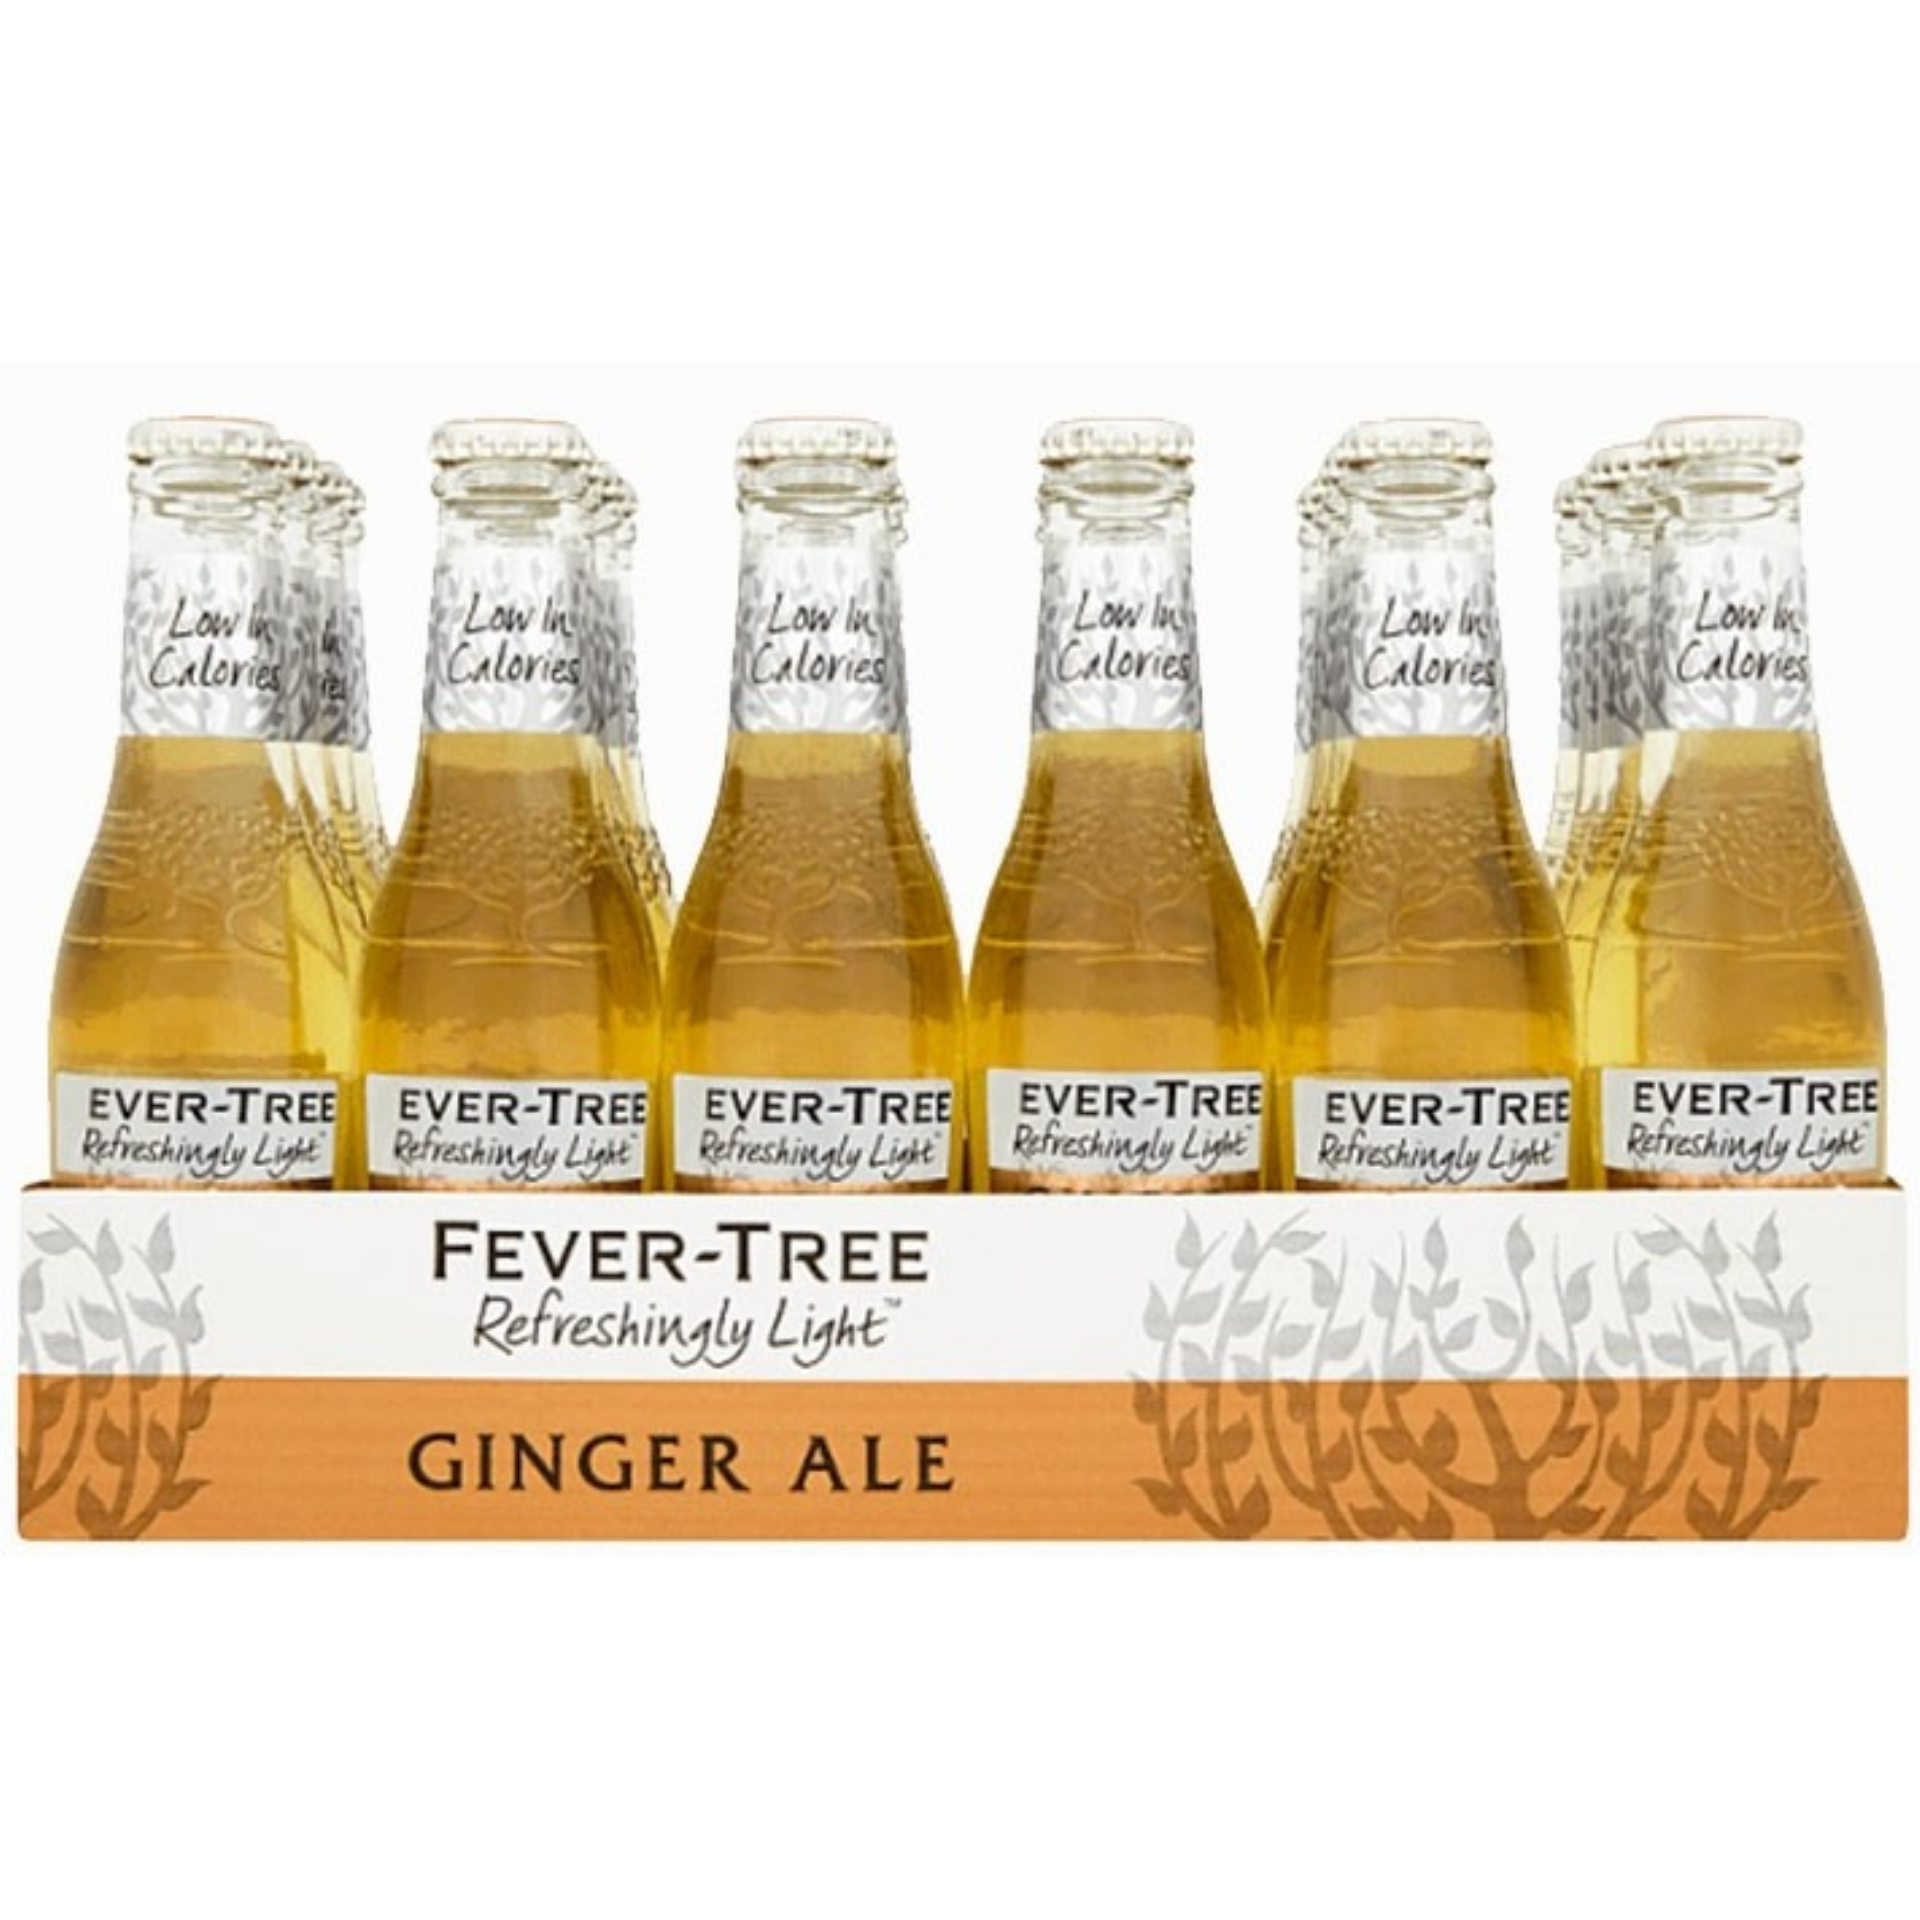 Fever Tree Premium Ginger Ale 200ml x 24 bottles